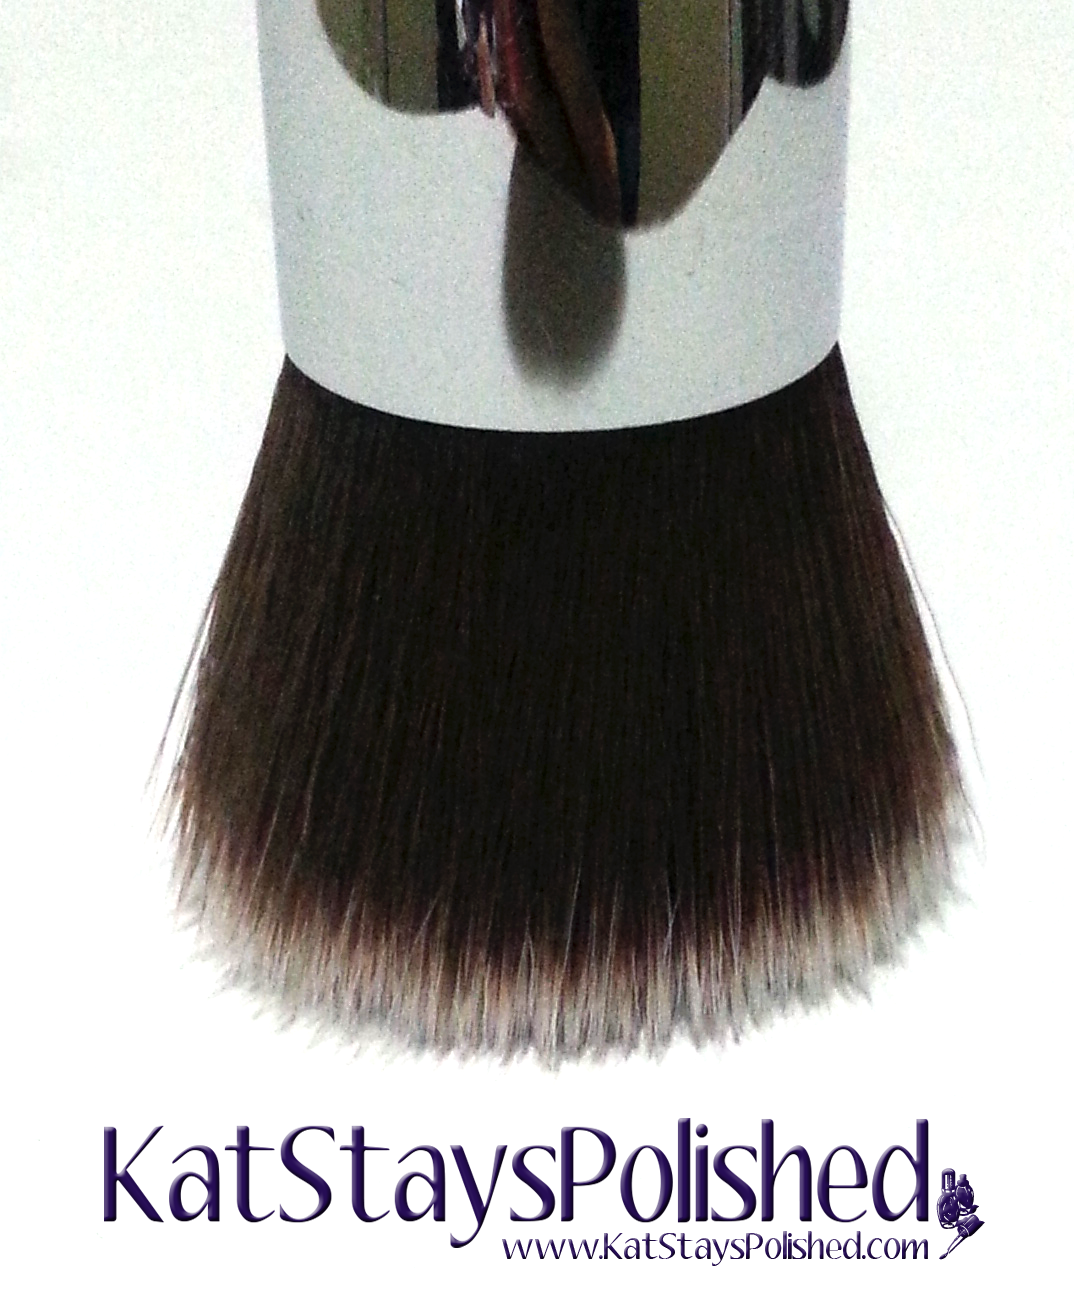 Sigma F80 Flat Kabuki Brush | Kat Stays Polished